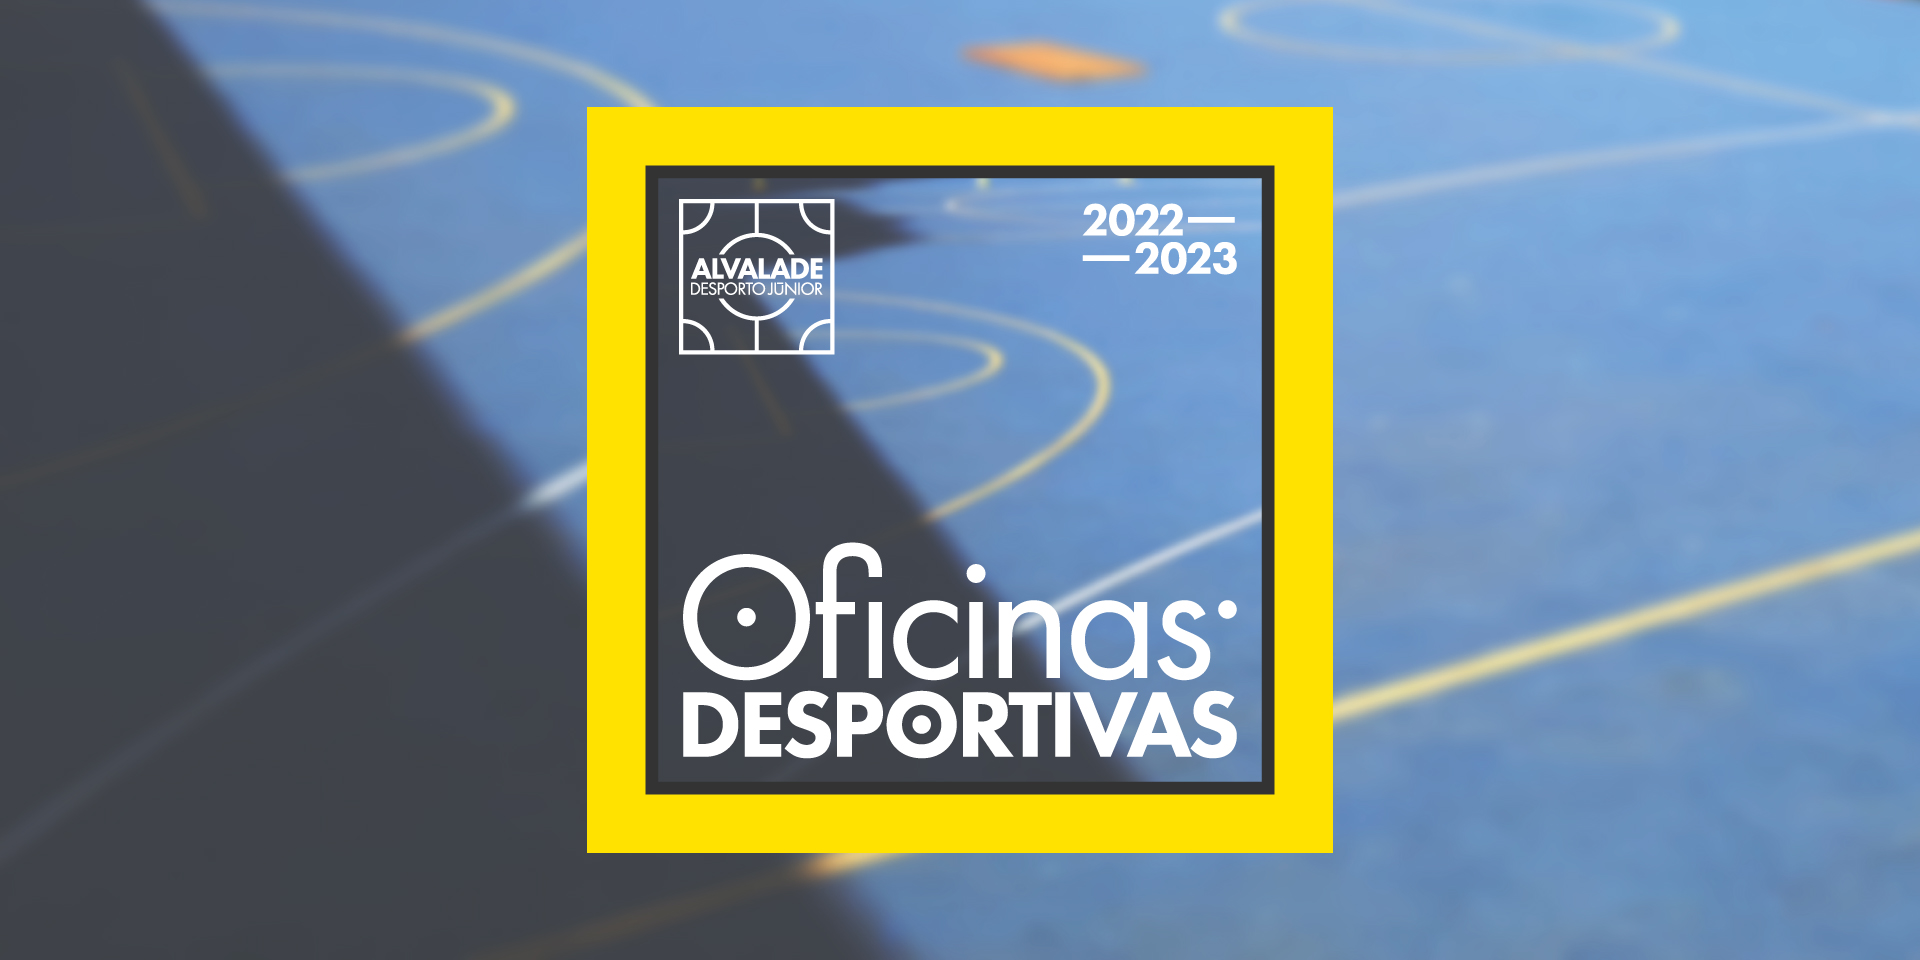 Inscrições abertas para o período 2022/2023 do projeto Xadrez Legal